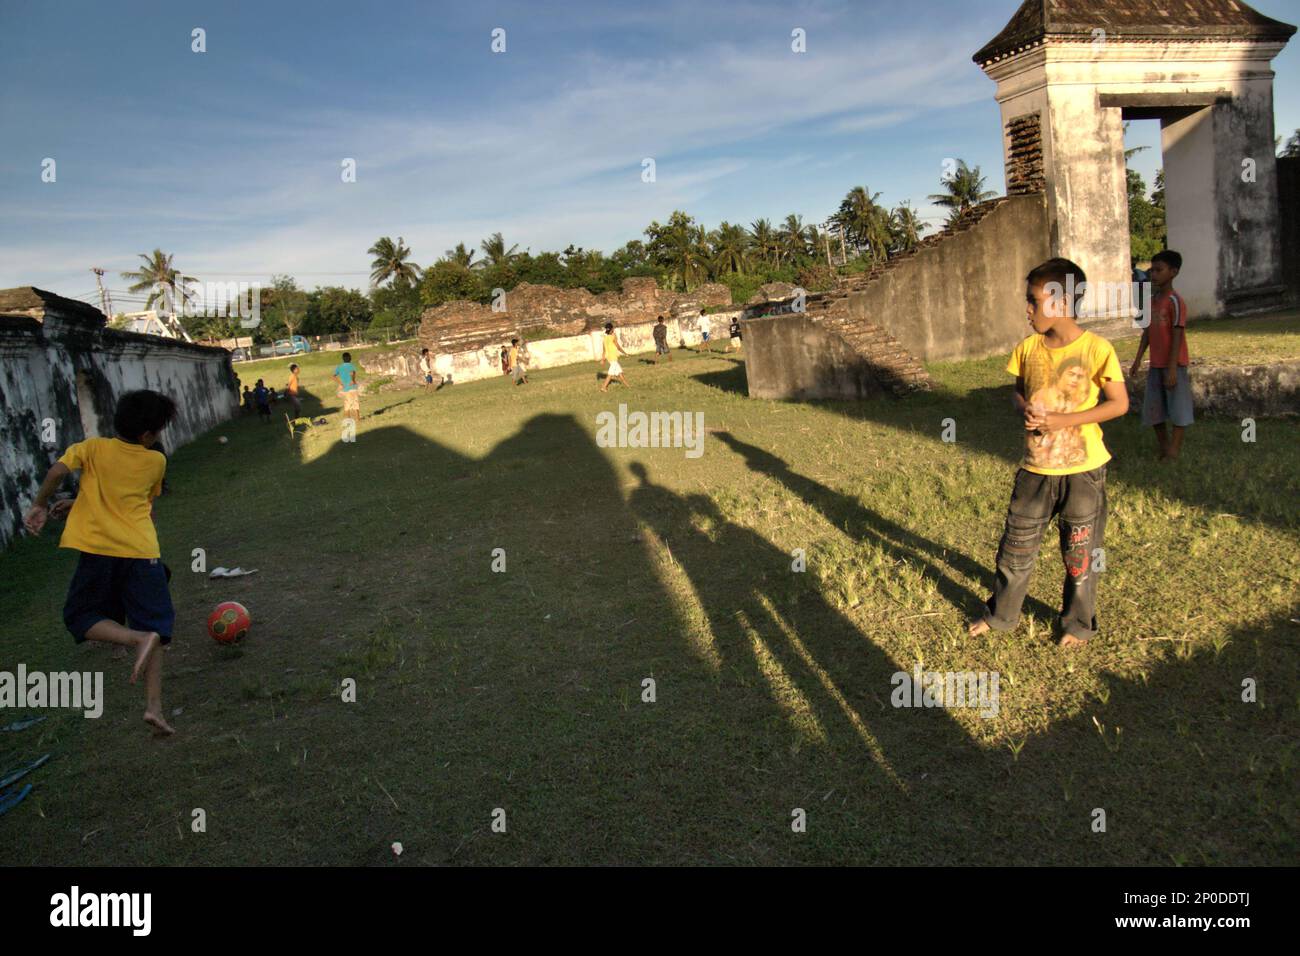 Flache Grasfelder zwischen den Ruinen sind beliebte Orte für Kinder, um Fußball zu spielen im Kaibon Palast, eines der Kulturerbe-Objekte der Banten Sultanate-Zeit, das sich in der Gegend befindet, die heute Banten Lama (Old Banten) in Serang, Banten, Indonesien heißt, auf diesem Foto, das 2010 aufgenommen wurde. Eine kürzlich von Nurikah und E. Rakhmat Jazuli (Fakultät für Recht, Sultan Ageng Tirtayasa Universität, Banten) durchgeführte Feldforschung hat ergeben, dass es zahlreiche Verstöße gegen die Behandlung von Kulturerbeobjekten in der Region gab. Die Menschen üben sportliche Aktivitäten in der Umgebung von Kulturerbeobjekten aus, Stockfoto